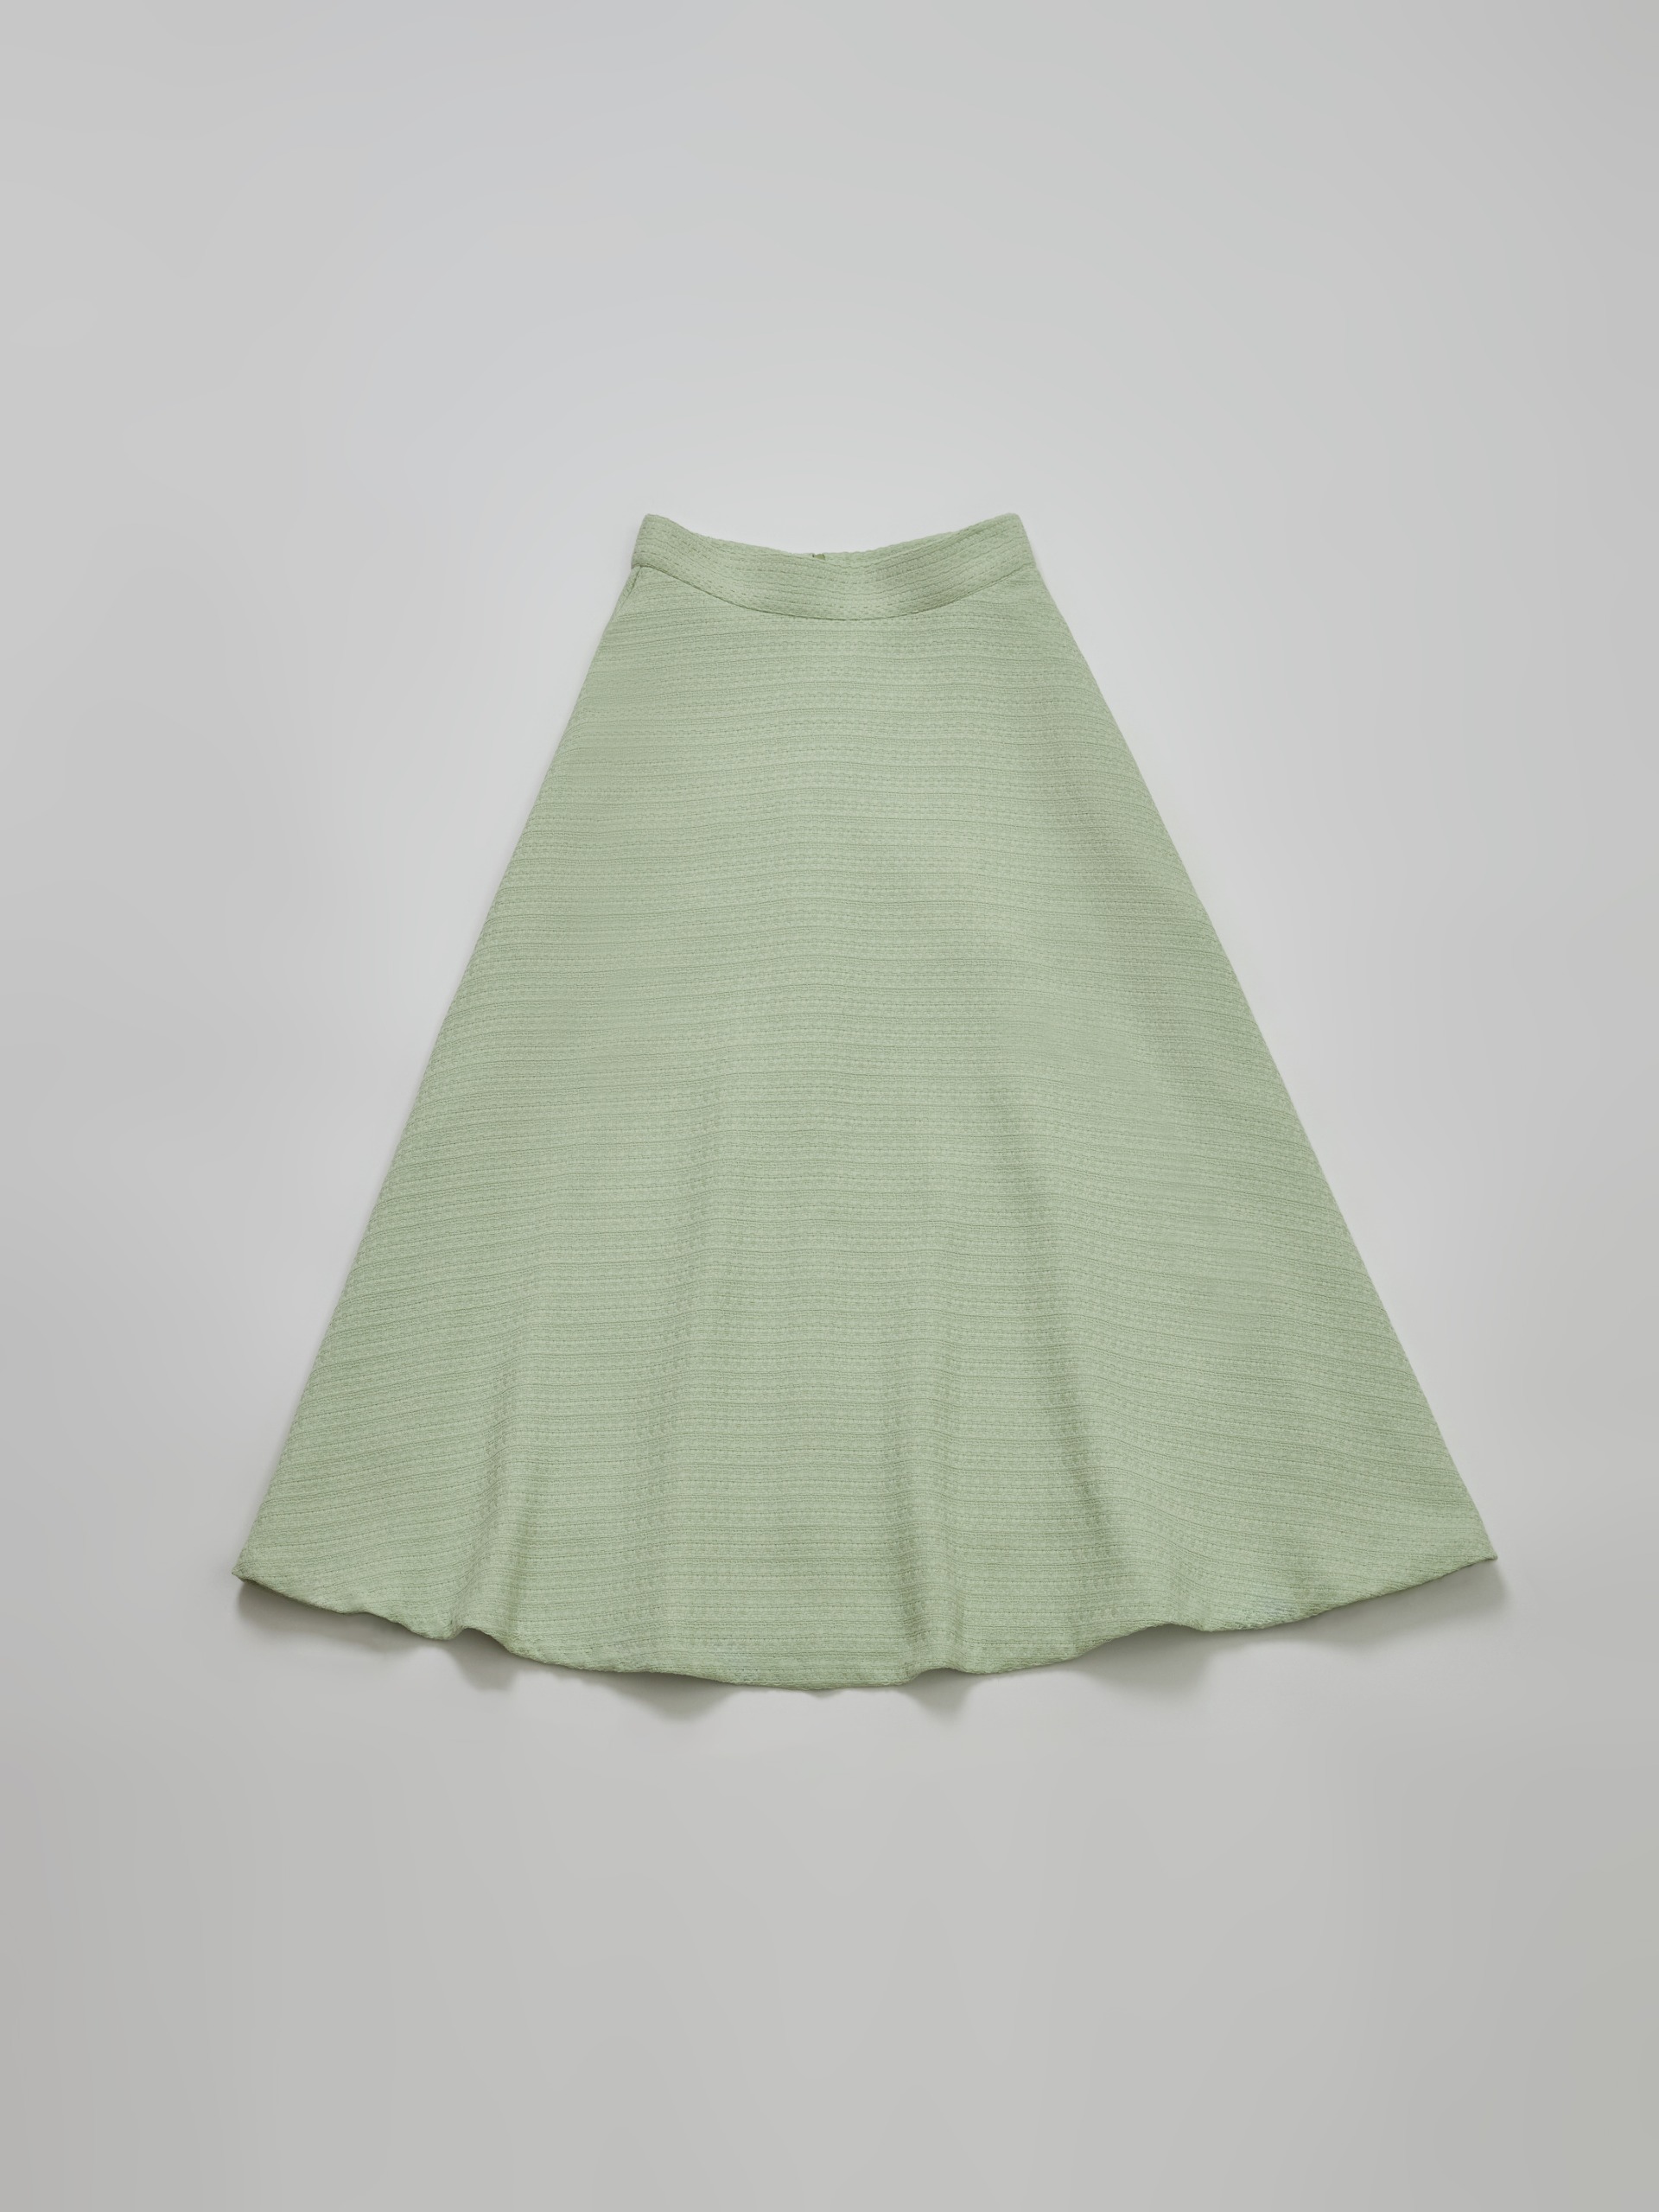 Merrill tweed skirt [MINT][Departure today]